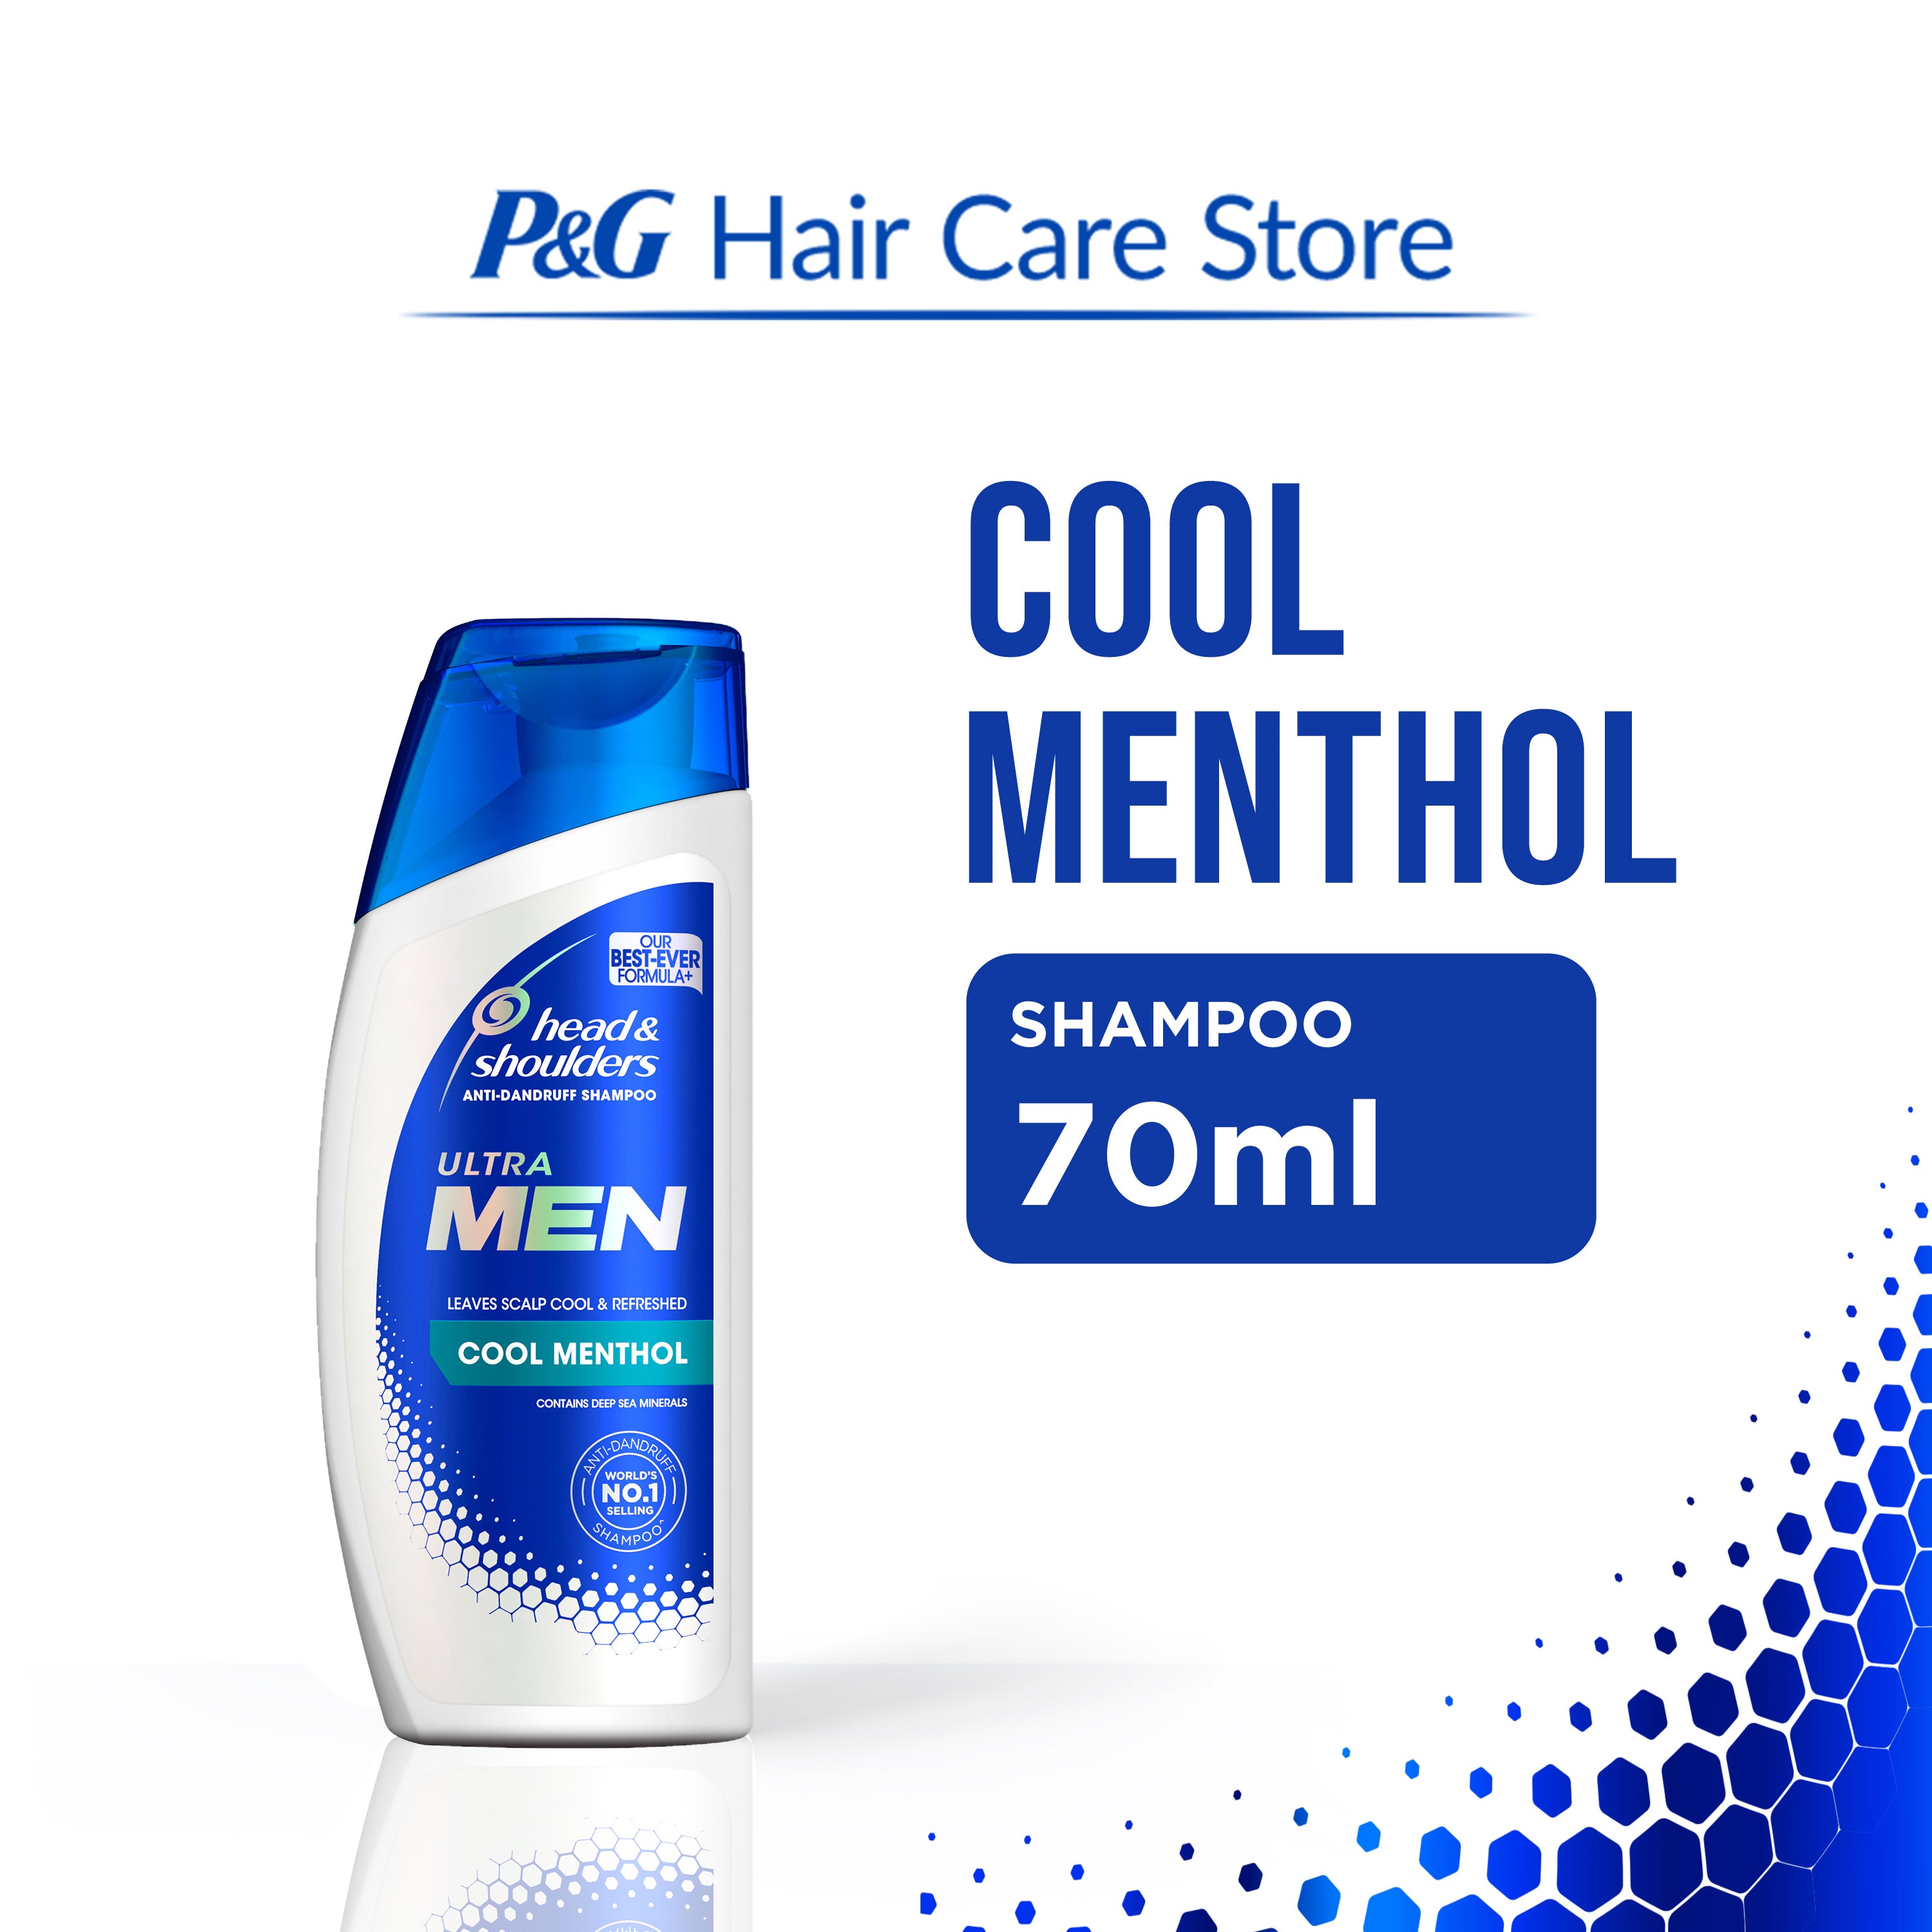 Head & Shoulders Cool Menthol Shampoo for Men 70ml [Anti-Dandruff]